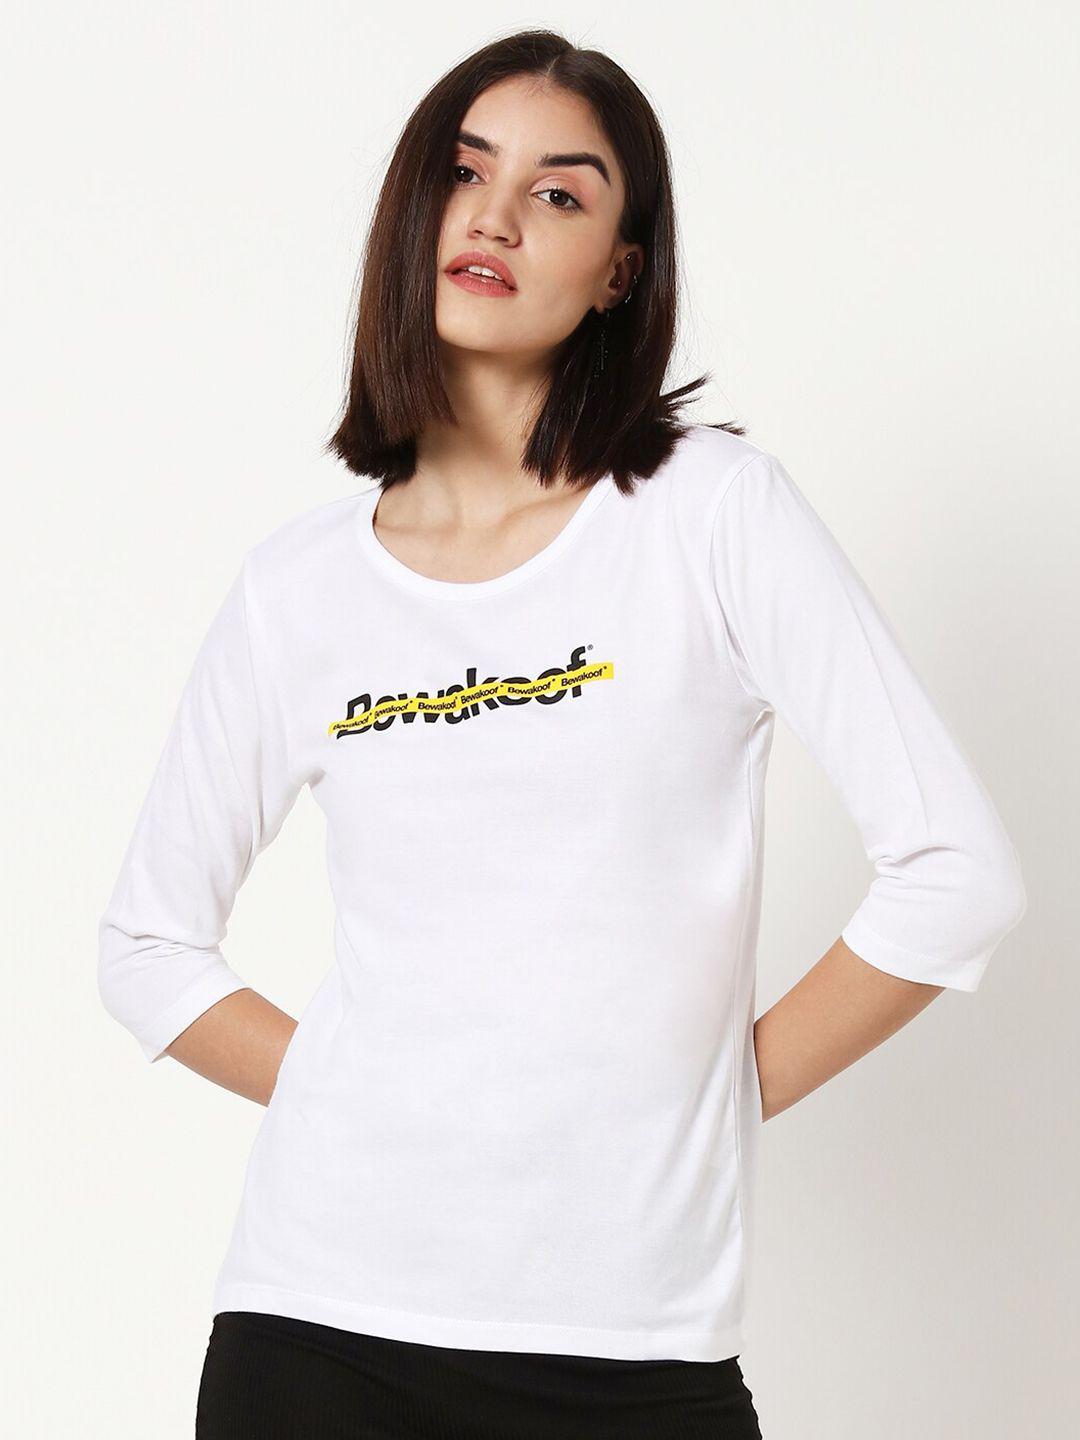 bewakoof women white typography t-shirt